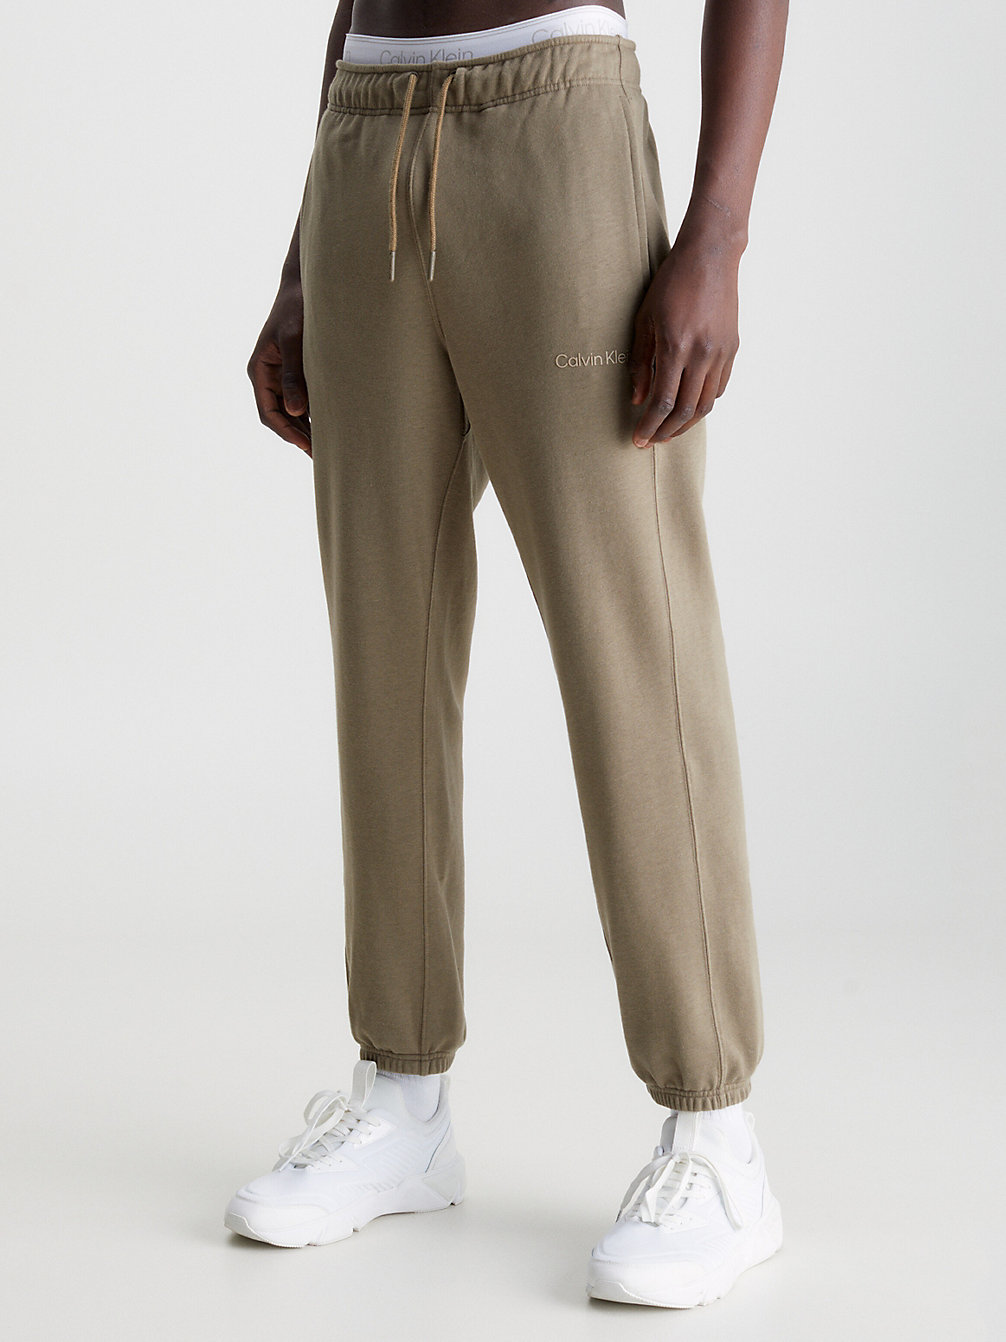 GRAY OLIVE Pantalon De Jogging En Tissu Éponge De Coton undefined hommes Calvin Klein